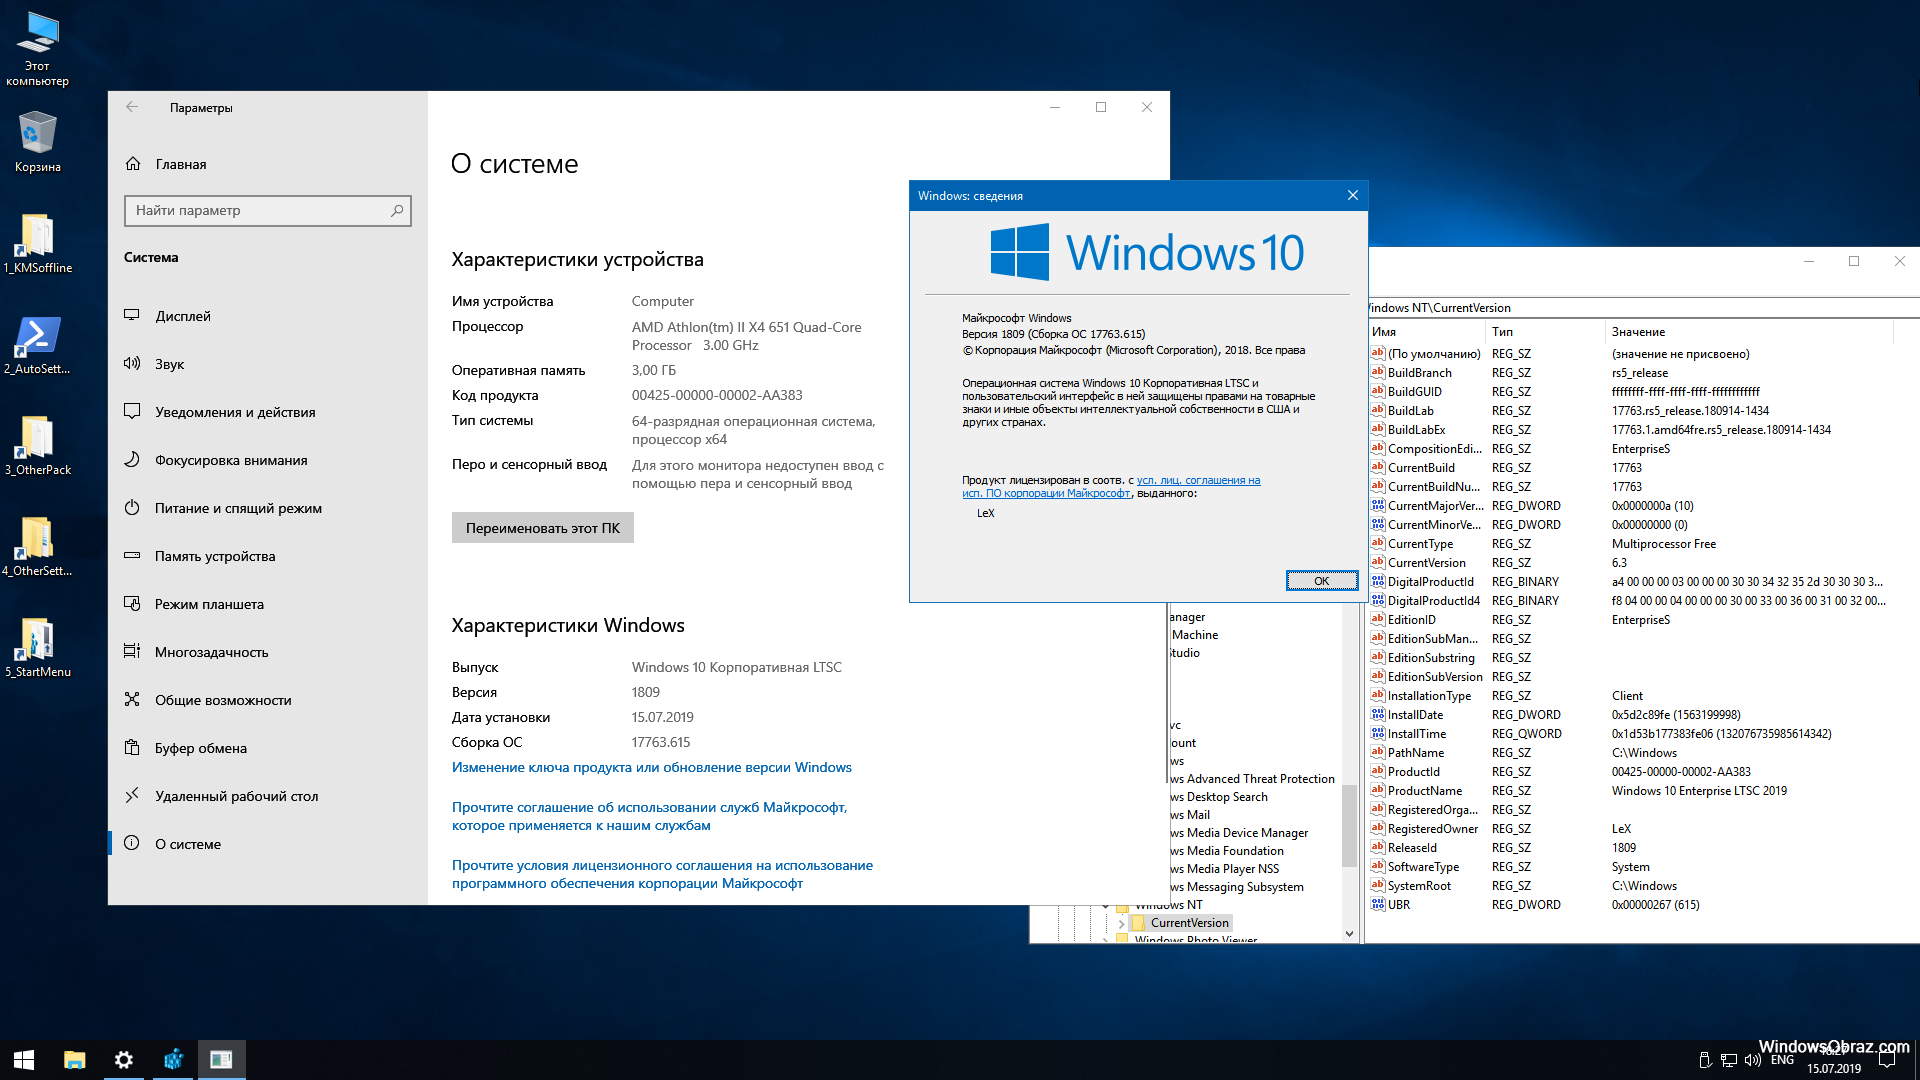 Виндовс 10 информация. Windows 10 корпоративная. Виндовс 10 корпоративная LTSC. Windows 10 Enterprise корпоративная) 64 bit. Windows 10 корпоративная LTSC 2019.